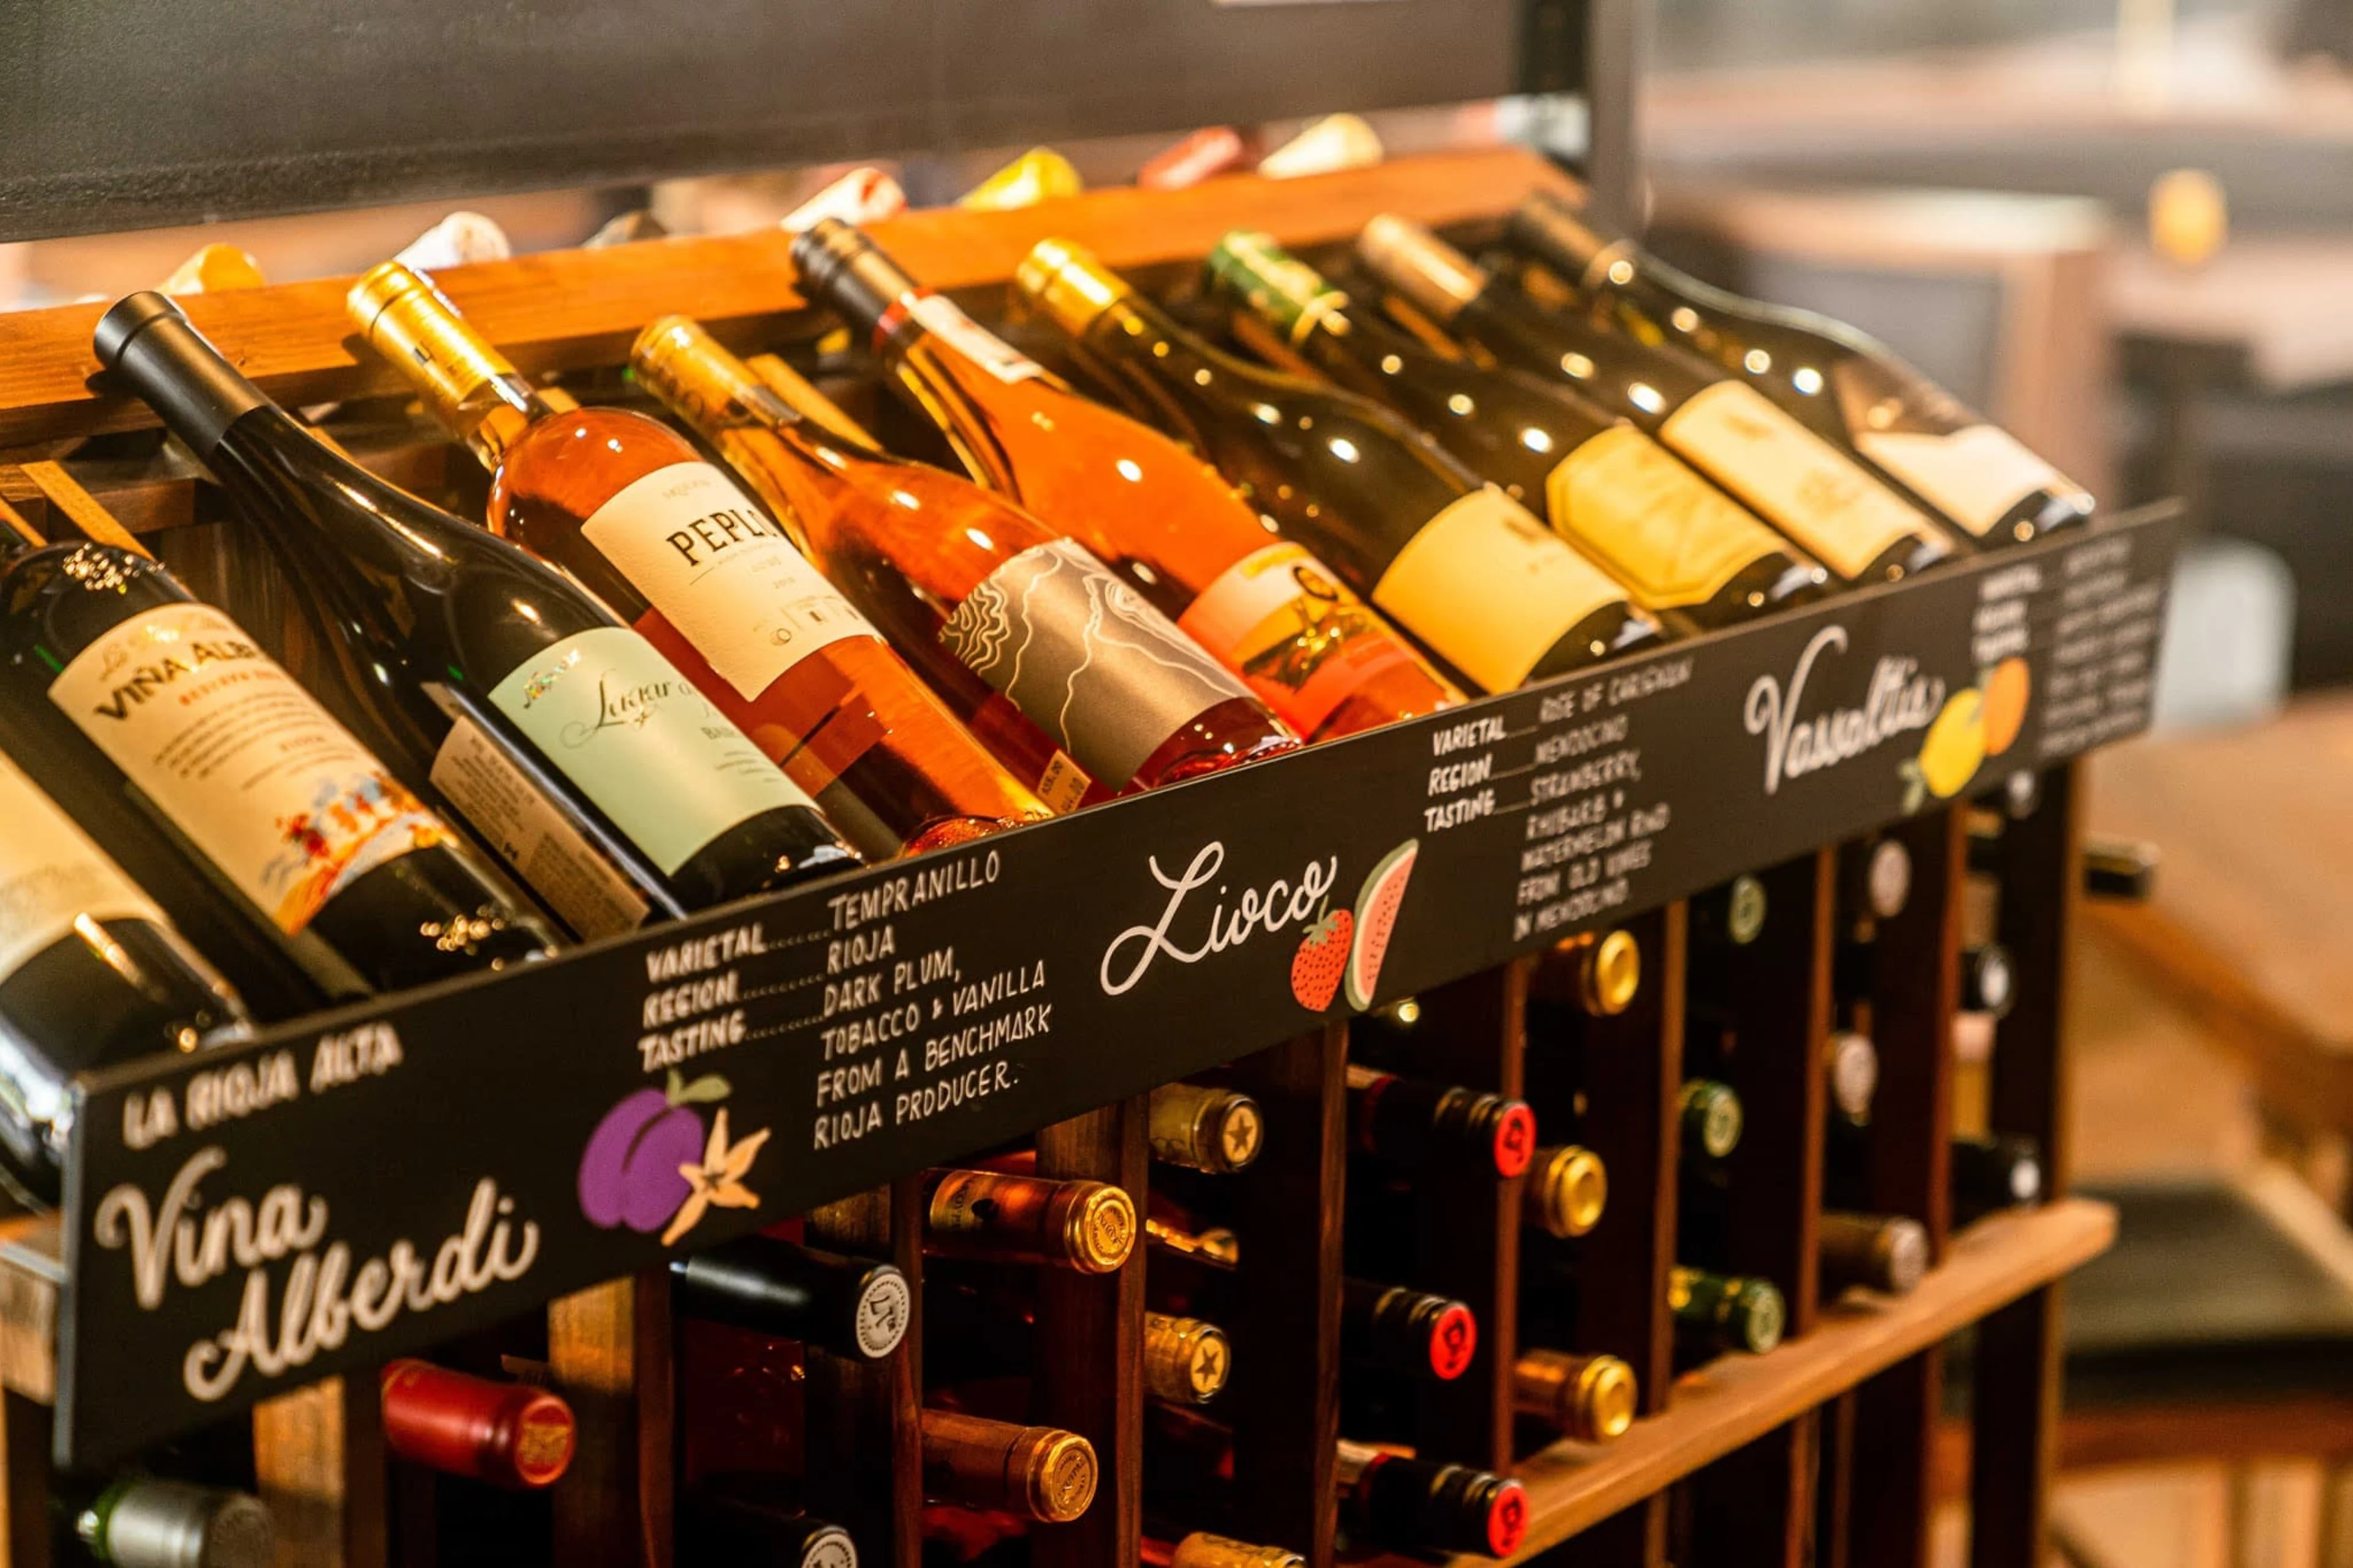 A rack full of wine.